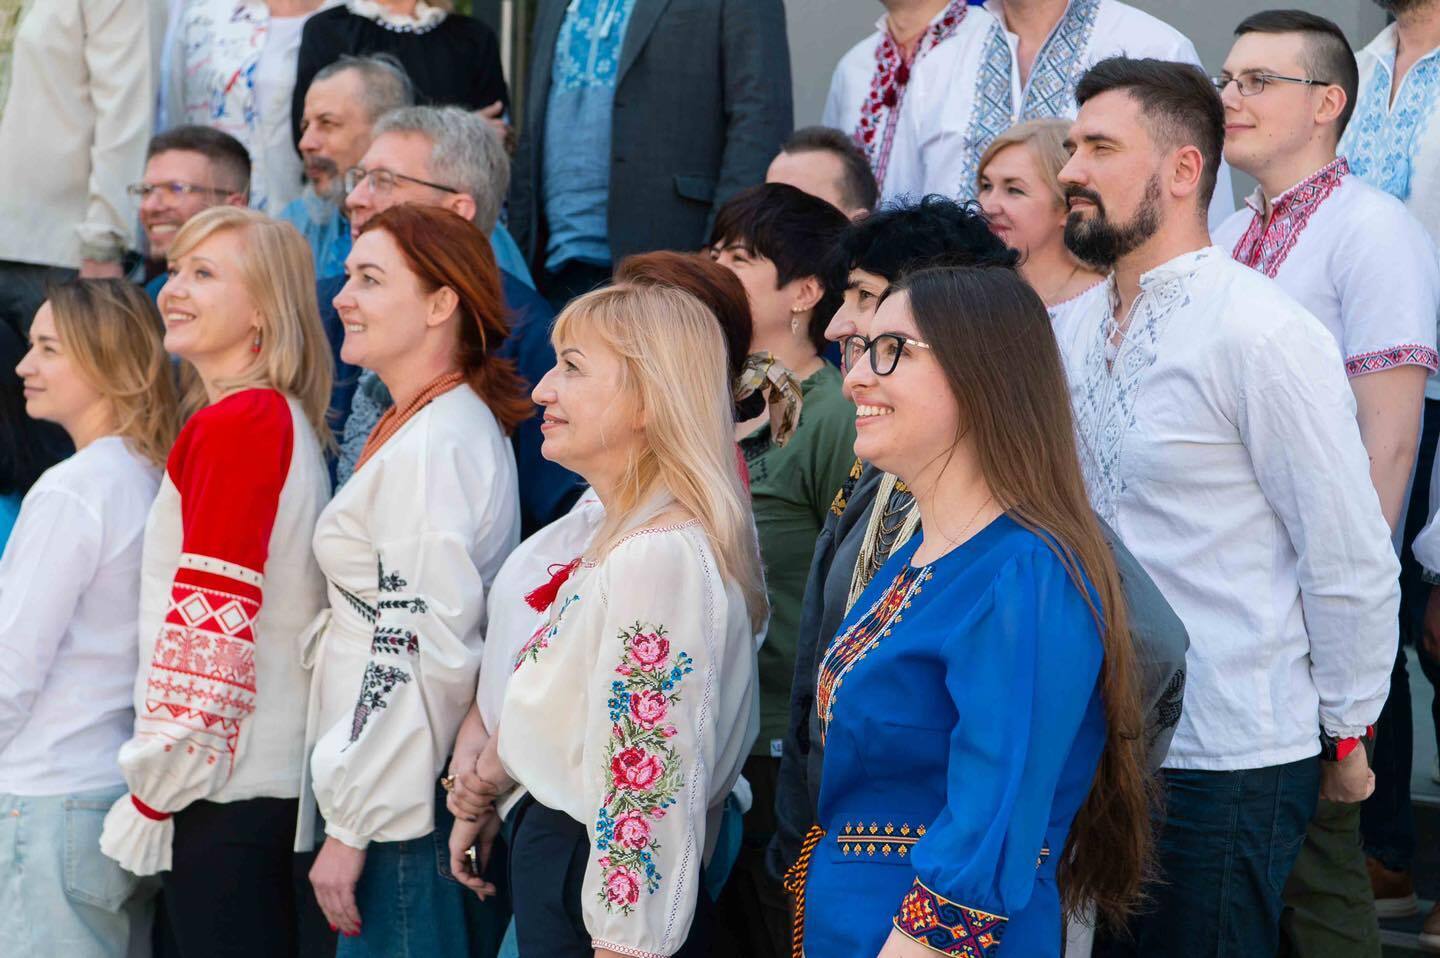 Вышиванка – это присяга на верность Украине: Порошенко с командой показали фото в украинских сорочках